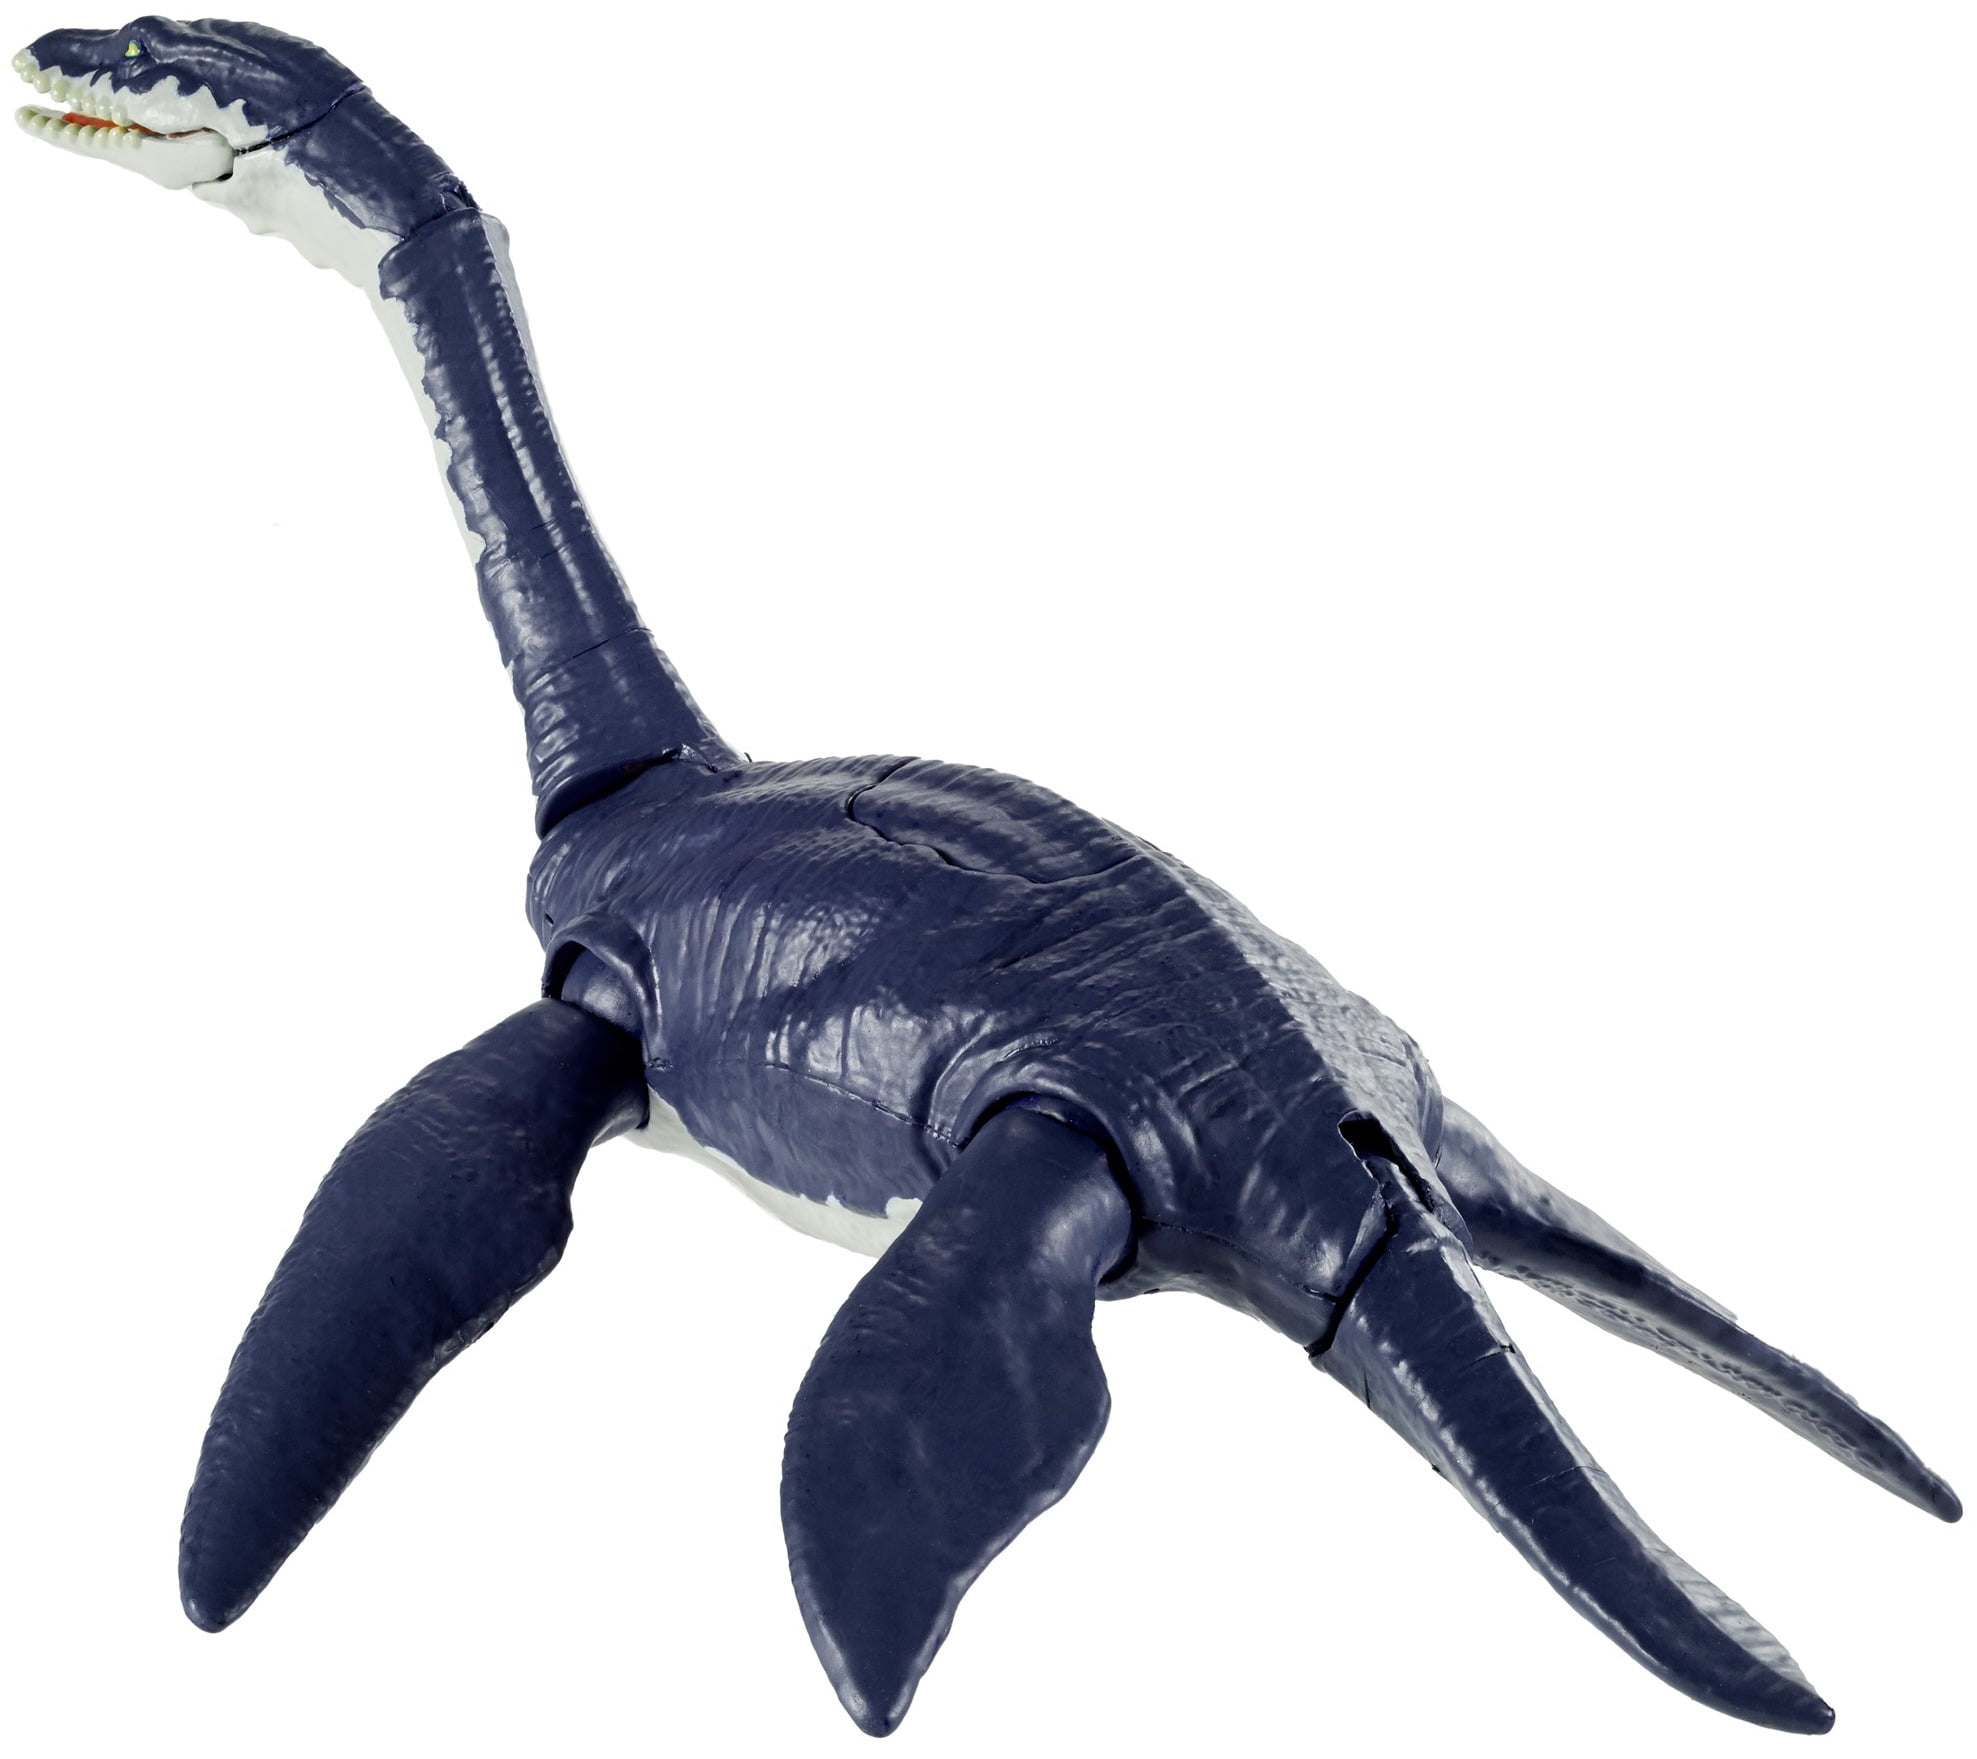 Plesiosaur Model Plesiosaurus Ocean Animal Dinosaur Figure Collector Toy Gift 